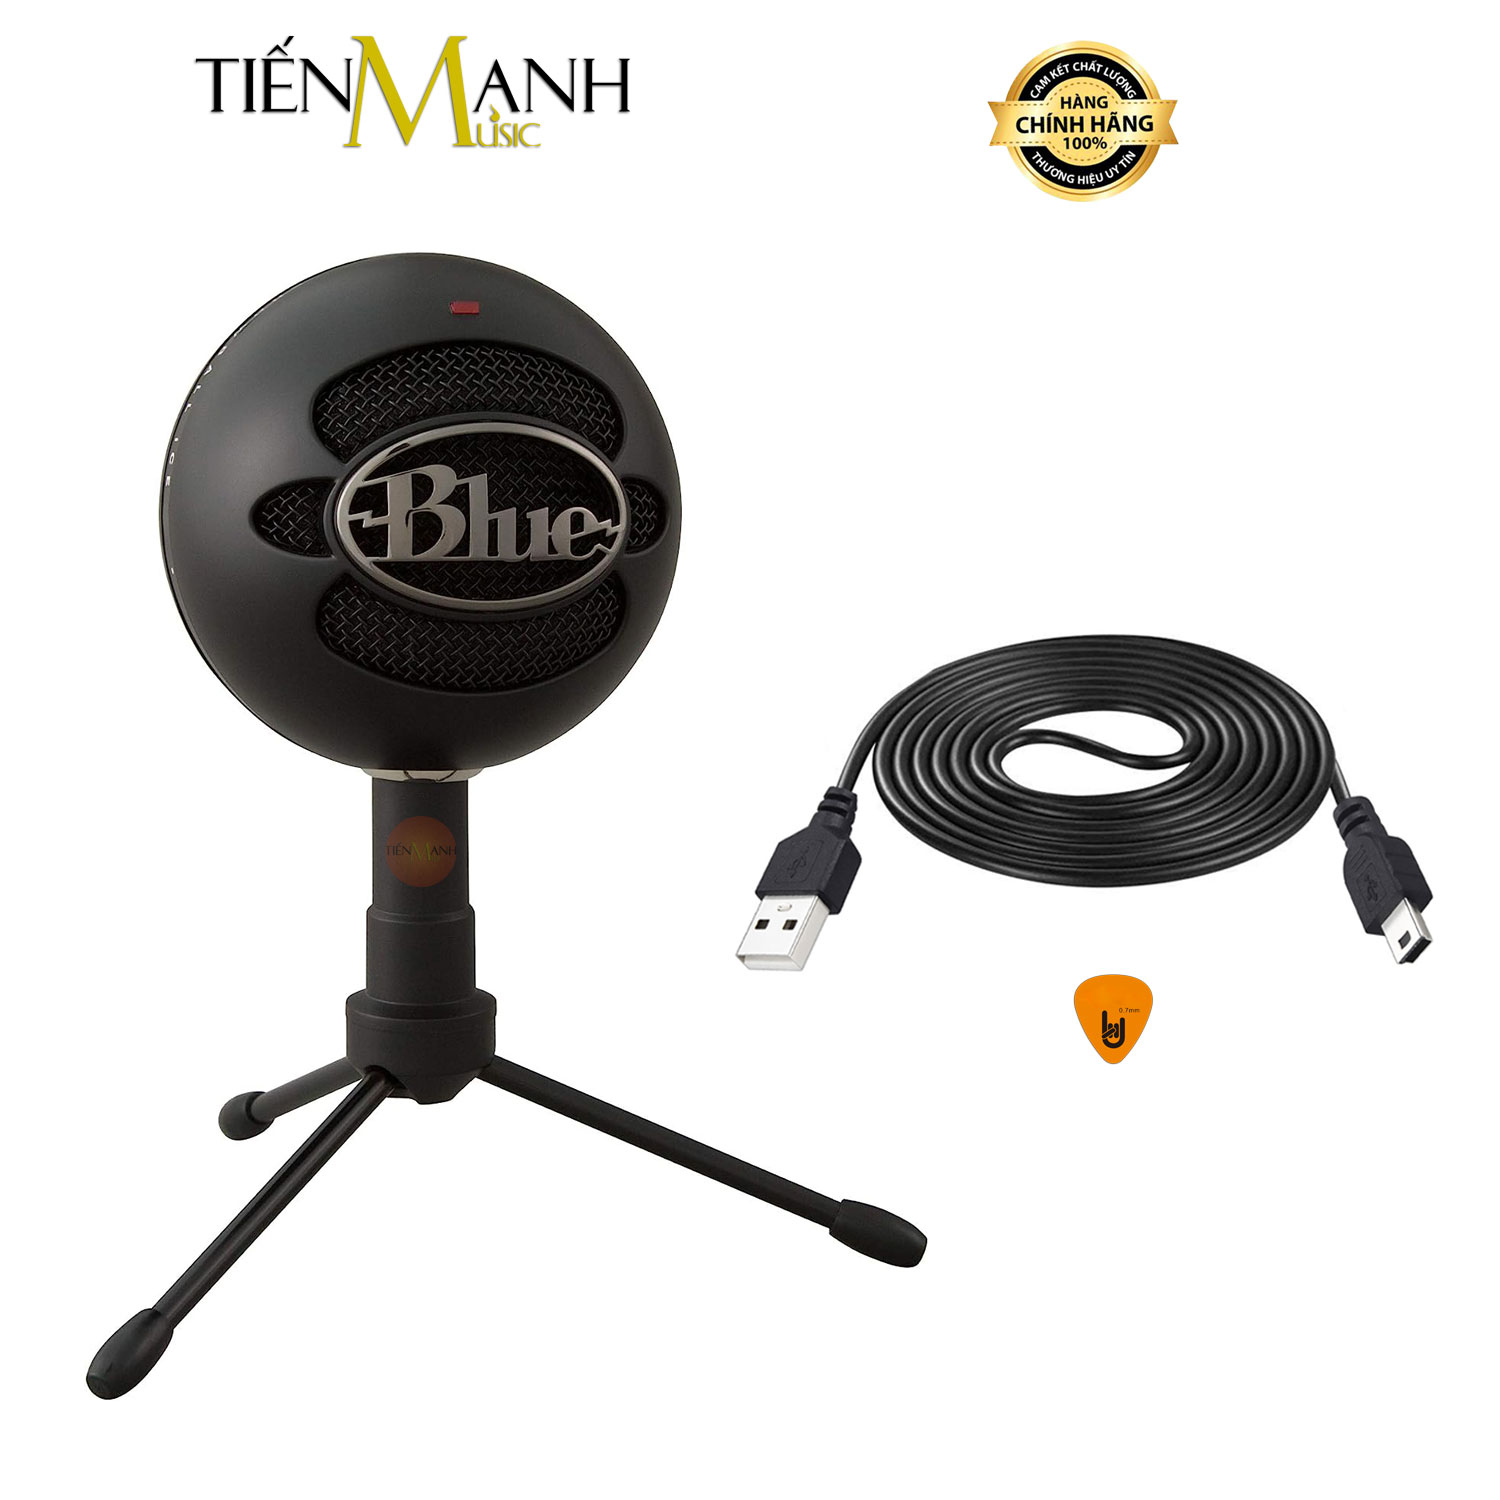 Micro Blue USB Snowball iCE USB Condenser - Mic Thu Âm Podcast, Livestream, ASMR Microphone Studio Snow ball Hàng Chính Hãng - Kèm Móng Gẩy DreamMaker